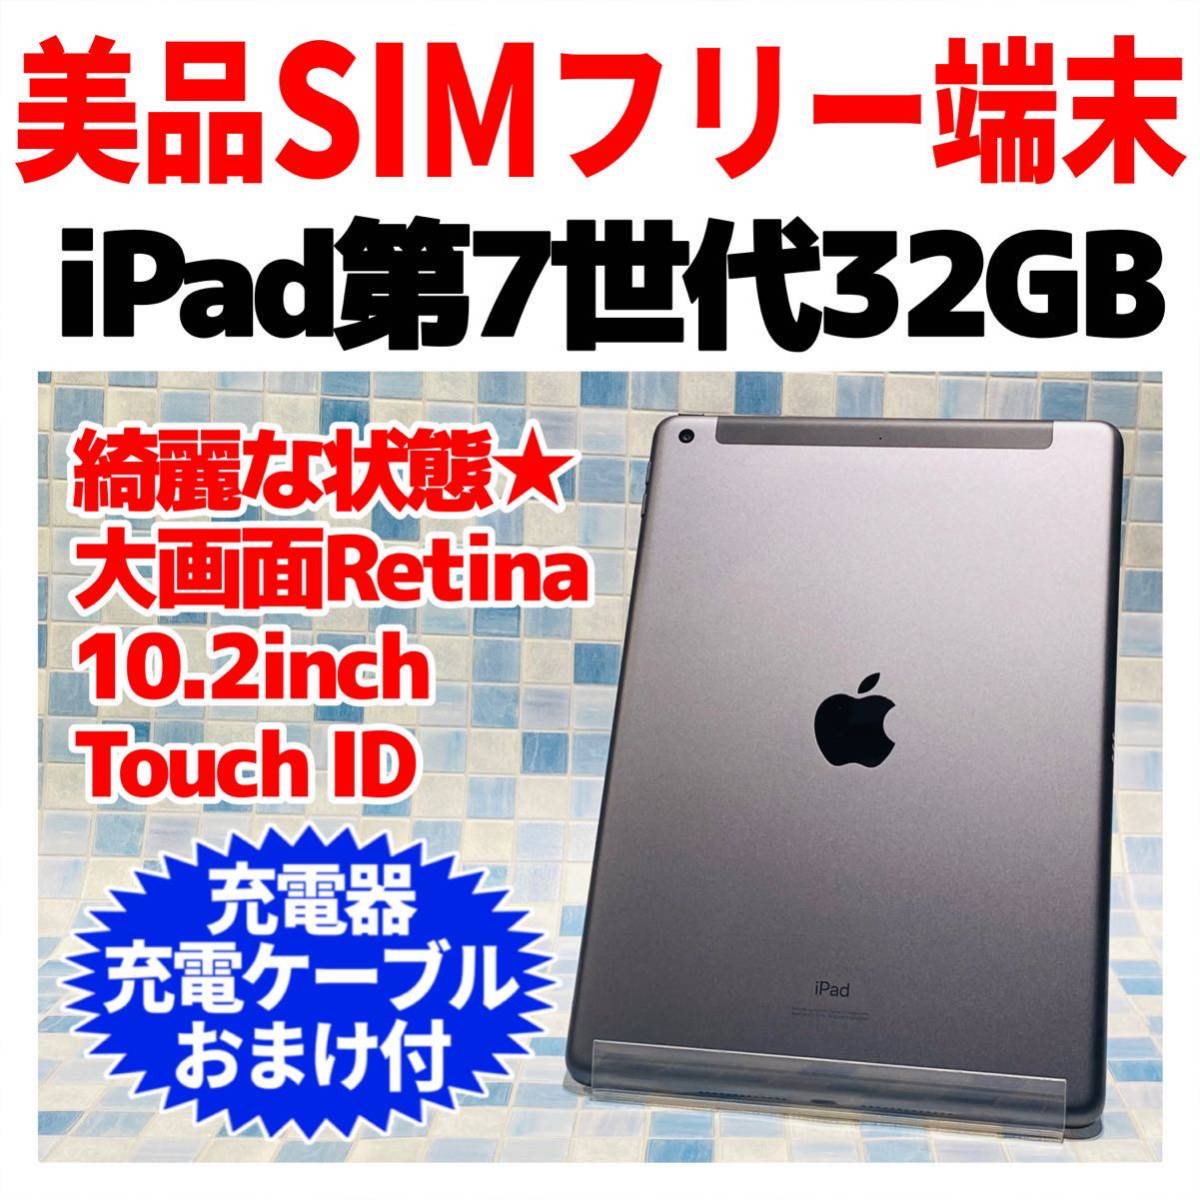 比較的美品 iPad Pro 第1世代 32GB 9.7 SIMフリー☆ から厳選した www